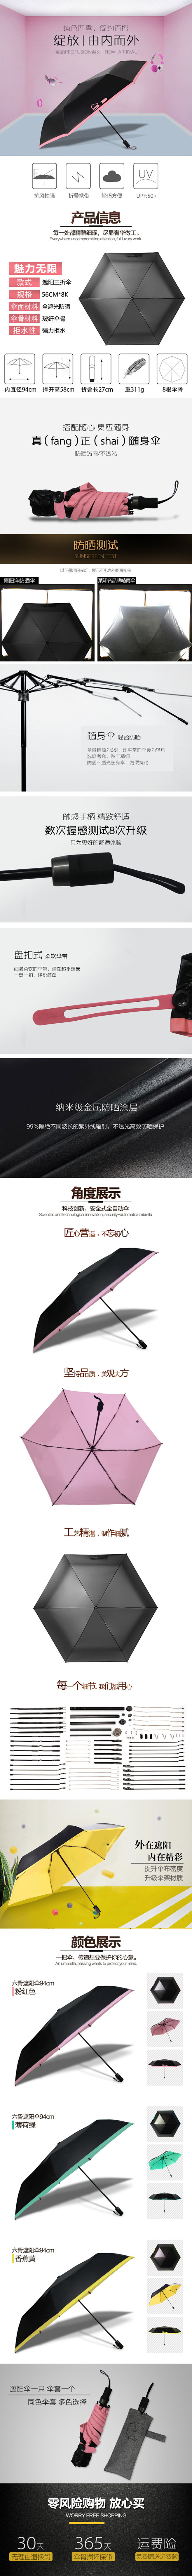 雨伞详情页。